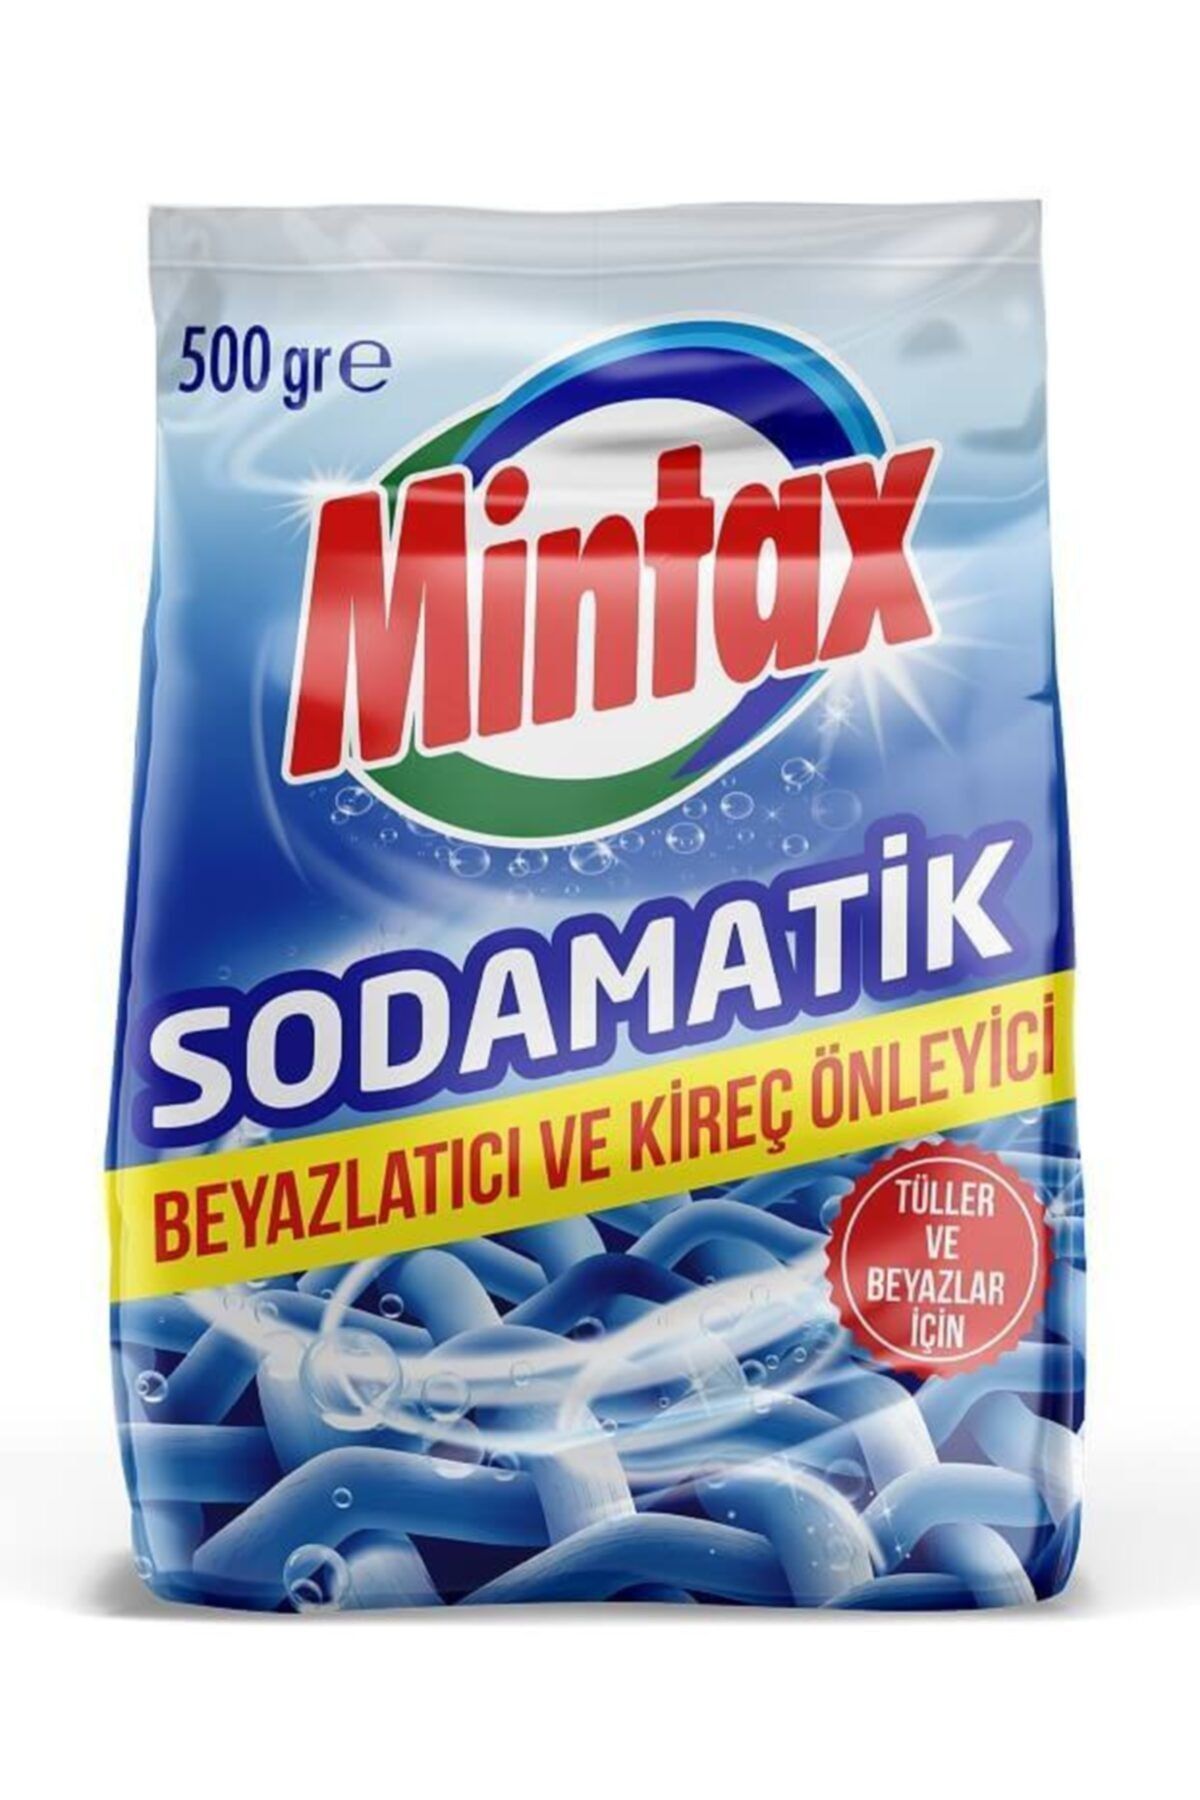 Mintax Soda Matik 500 gr